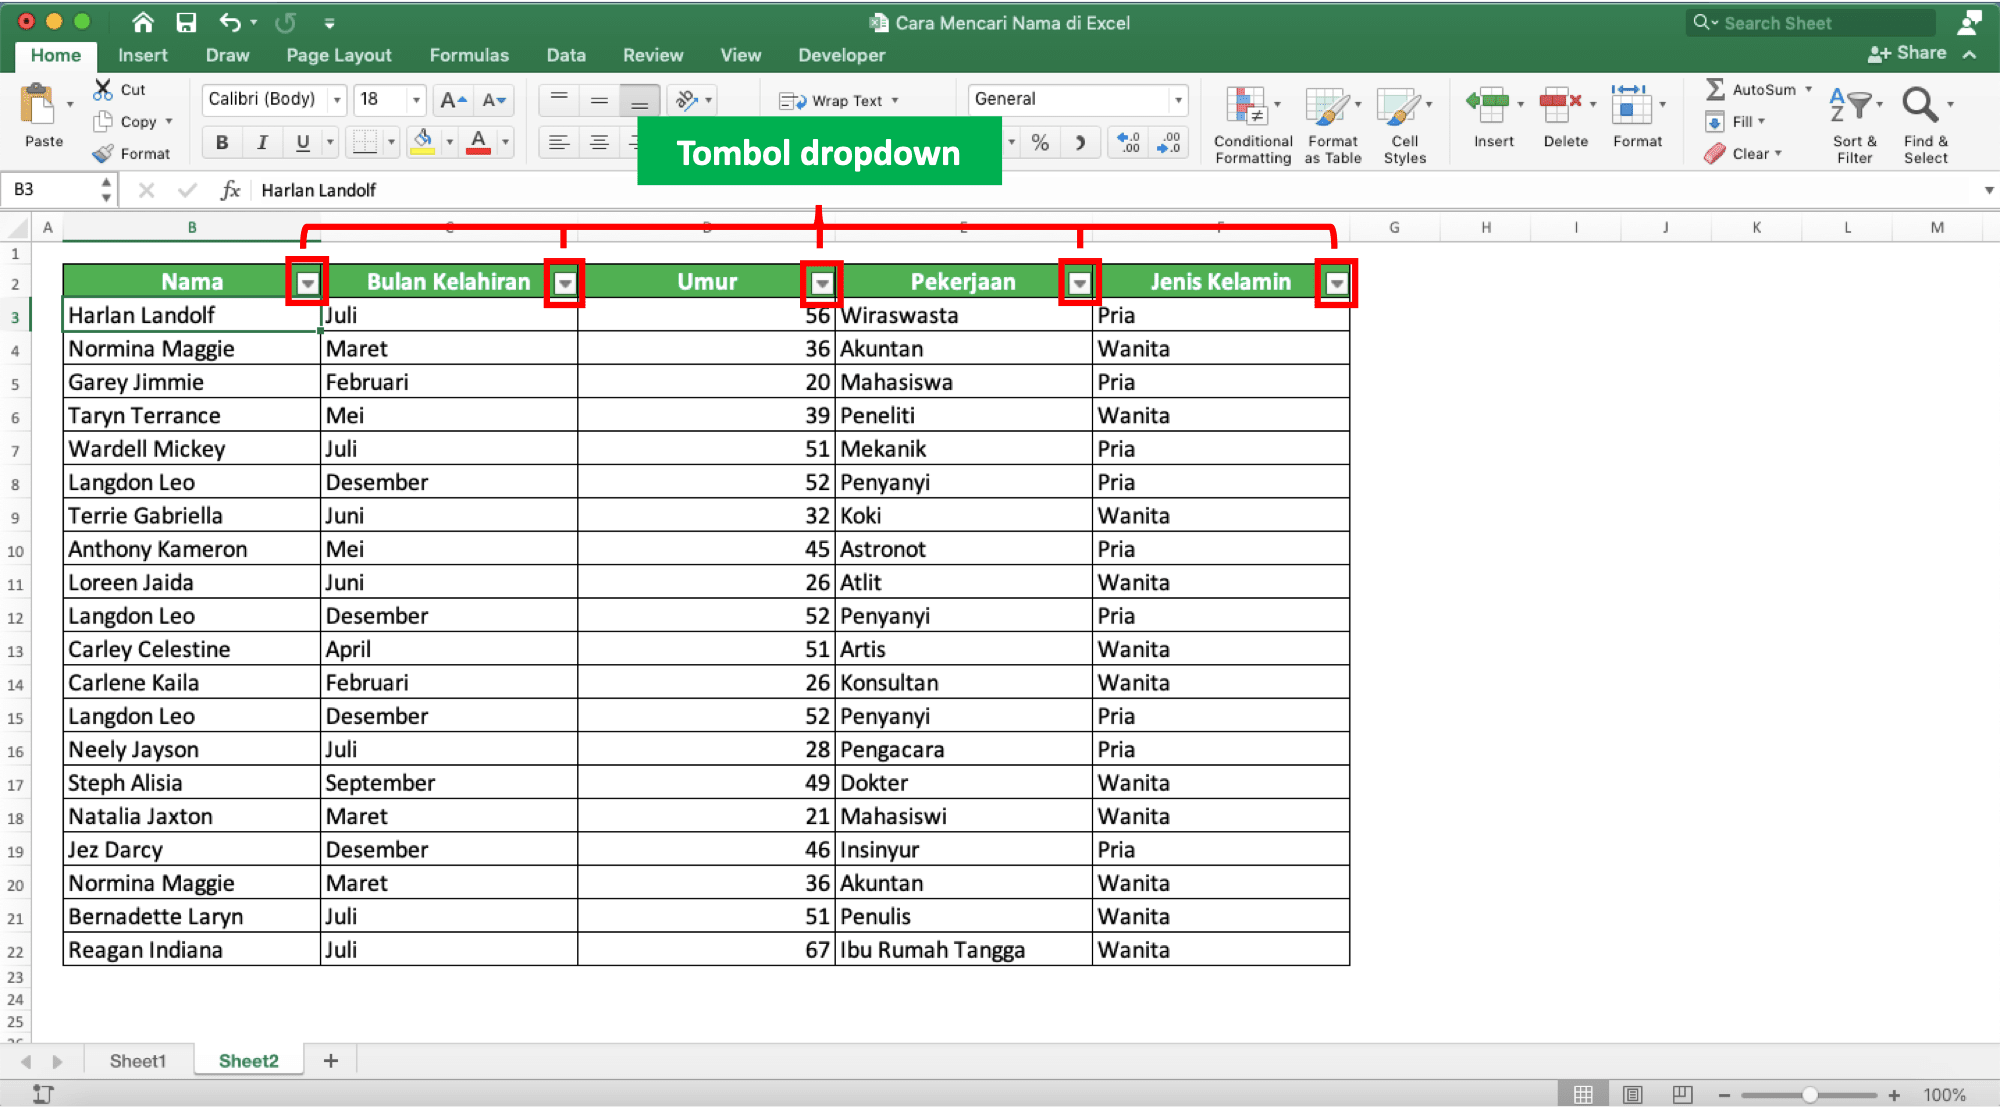 Cara Mencari Nama pada Excel